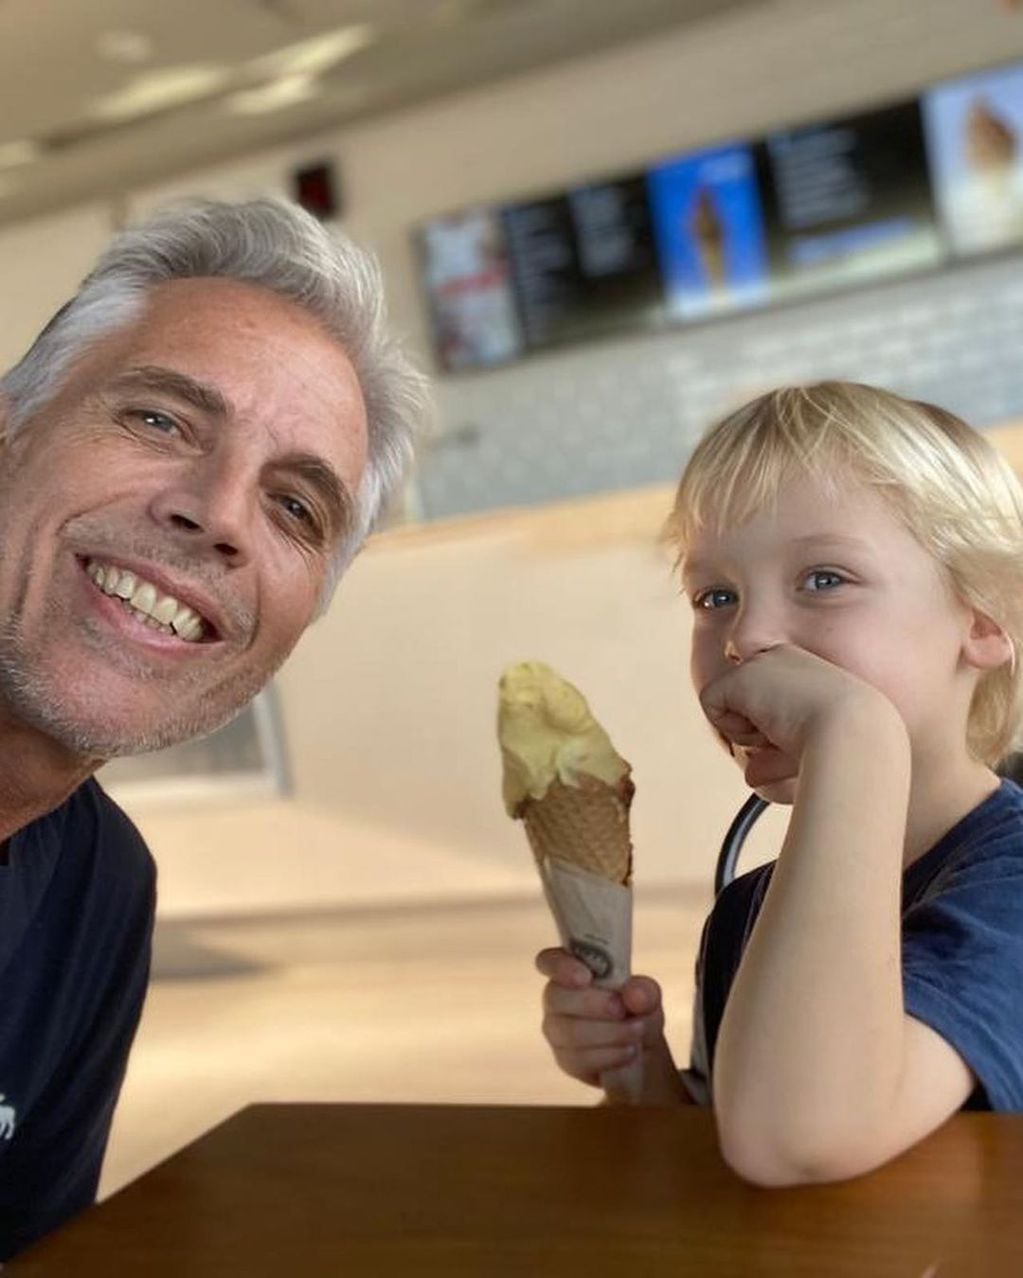 Mirko degustando un helado con su tío Ricky después de un corte de pelo.